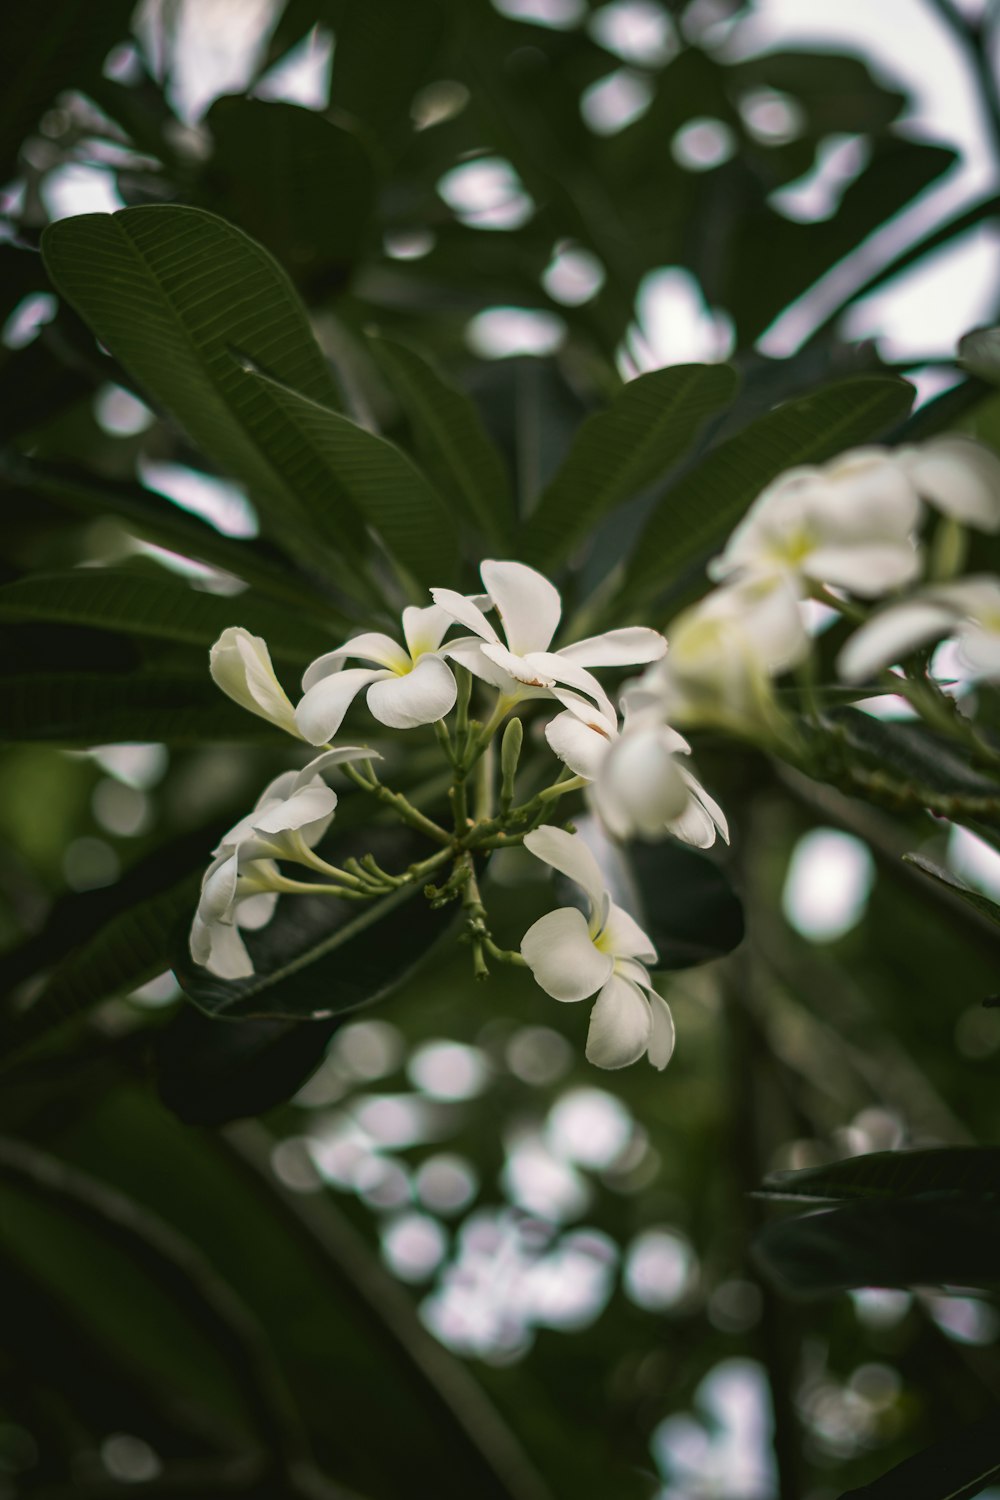 Un primo piano di una pianta con fiori bianchi